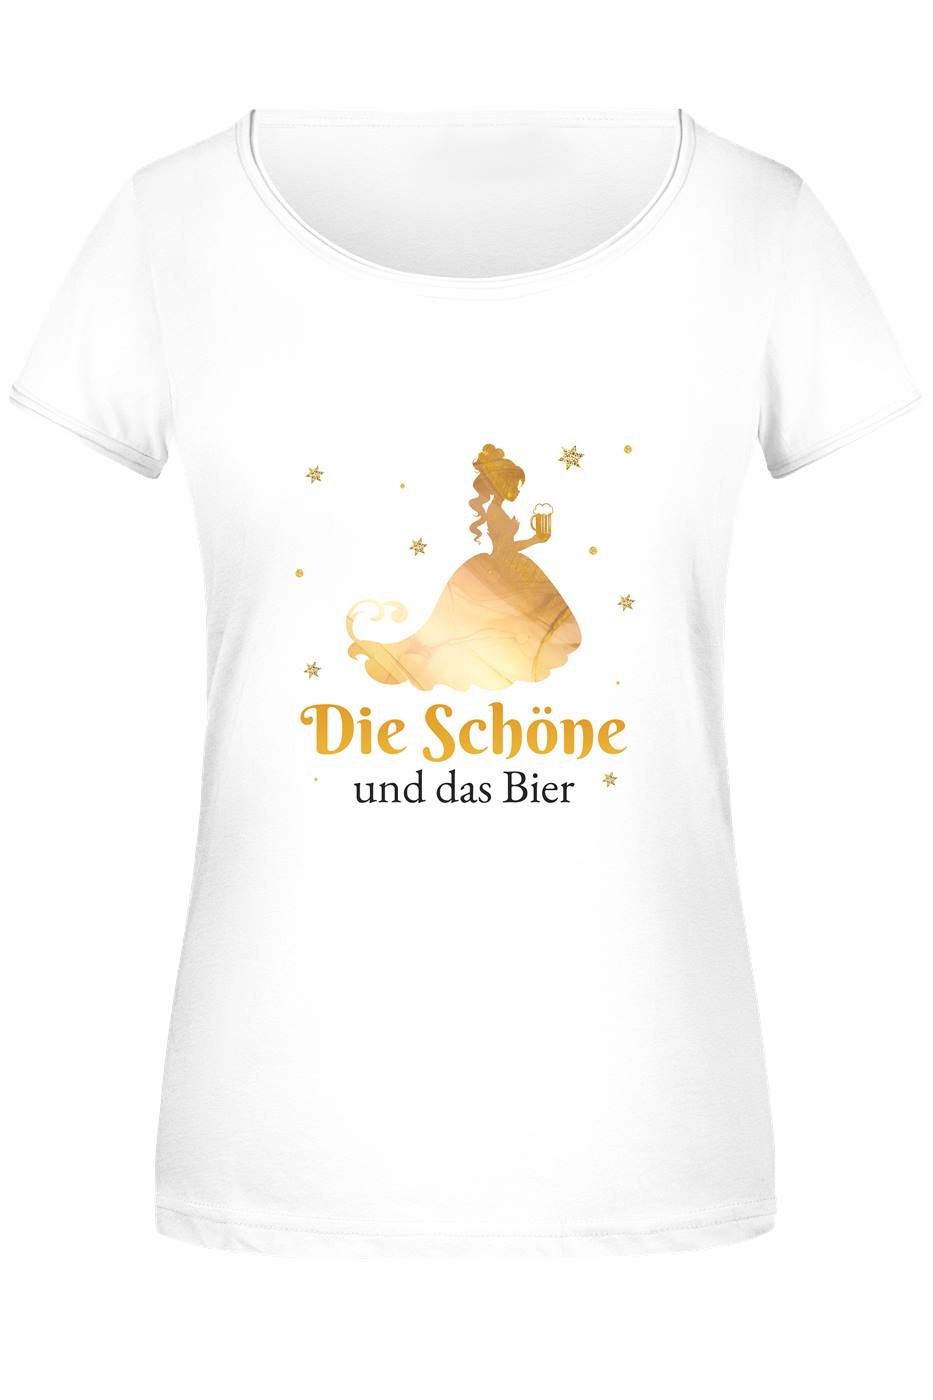 Bild: T-Shirt Damen - Die Schöne und das Bier Geschenkidee